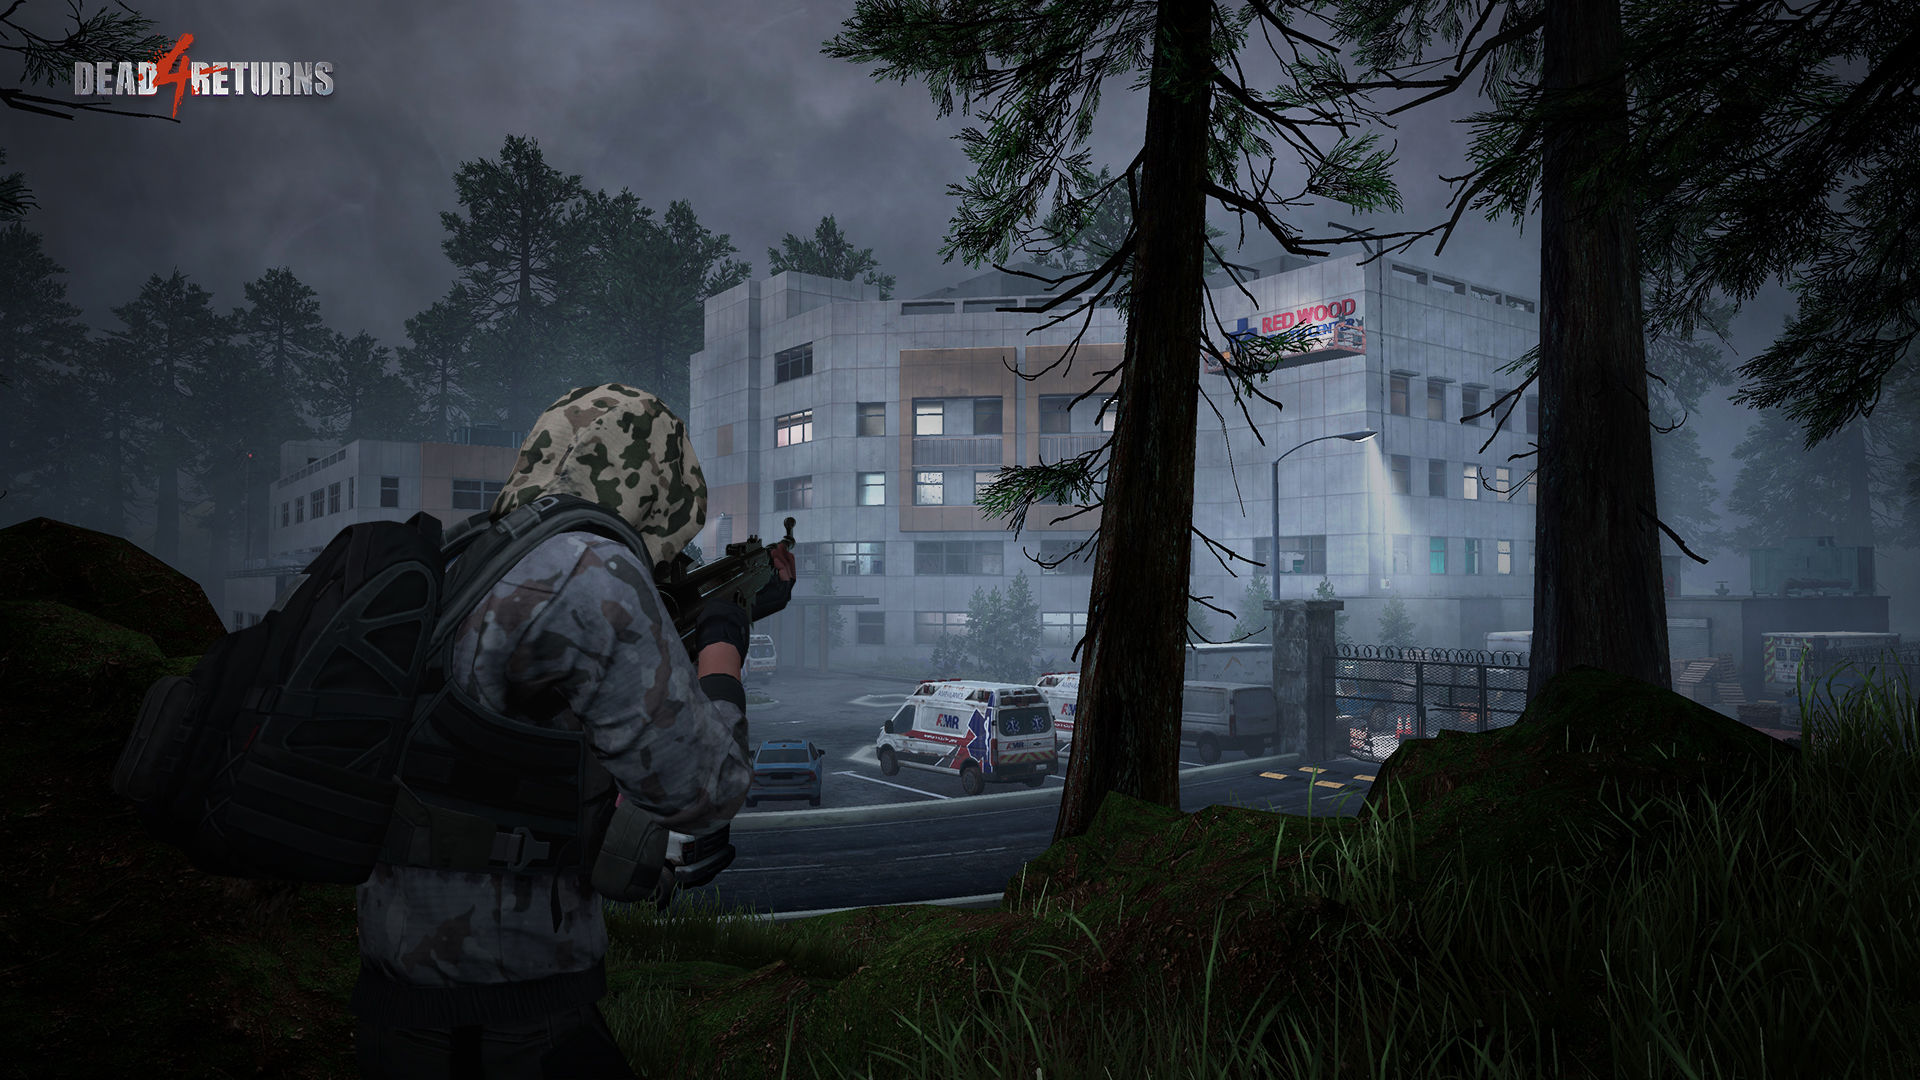 Dead 4 Returns: novo jogo de tiro com zumbis feito na Unreal Engine 4  (Android e iOS) - Mobile Gamer